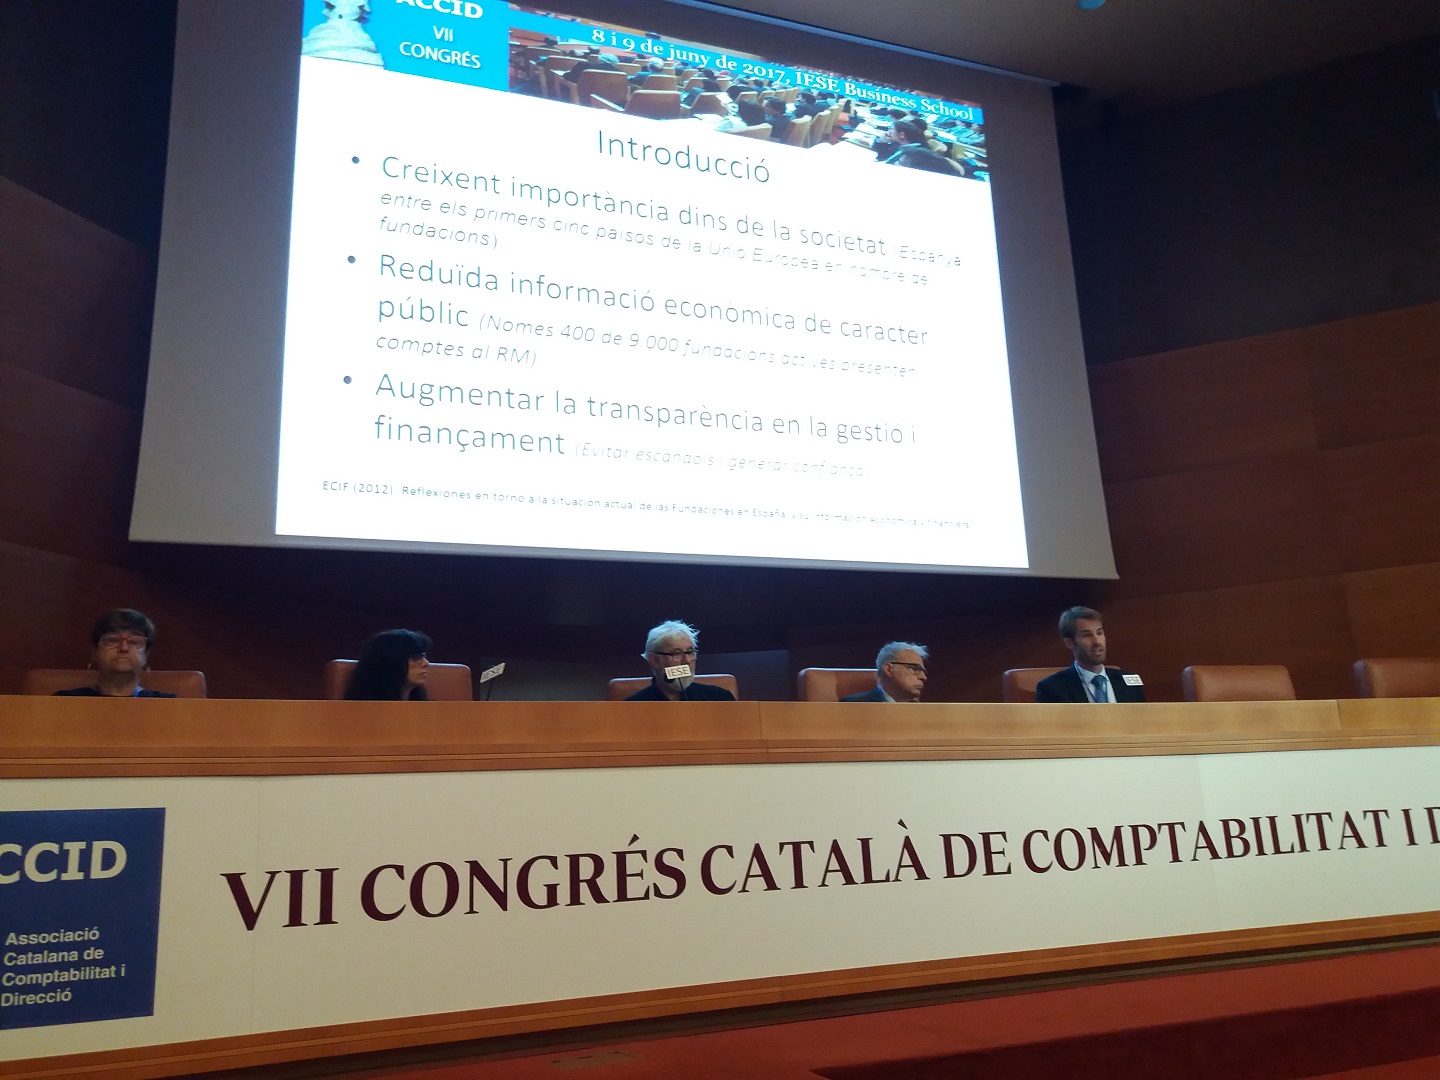 RaiSE participates in ACCID Congress in Barcelona 